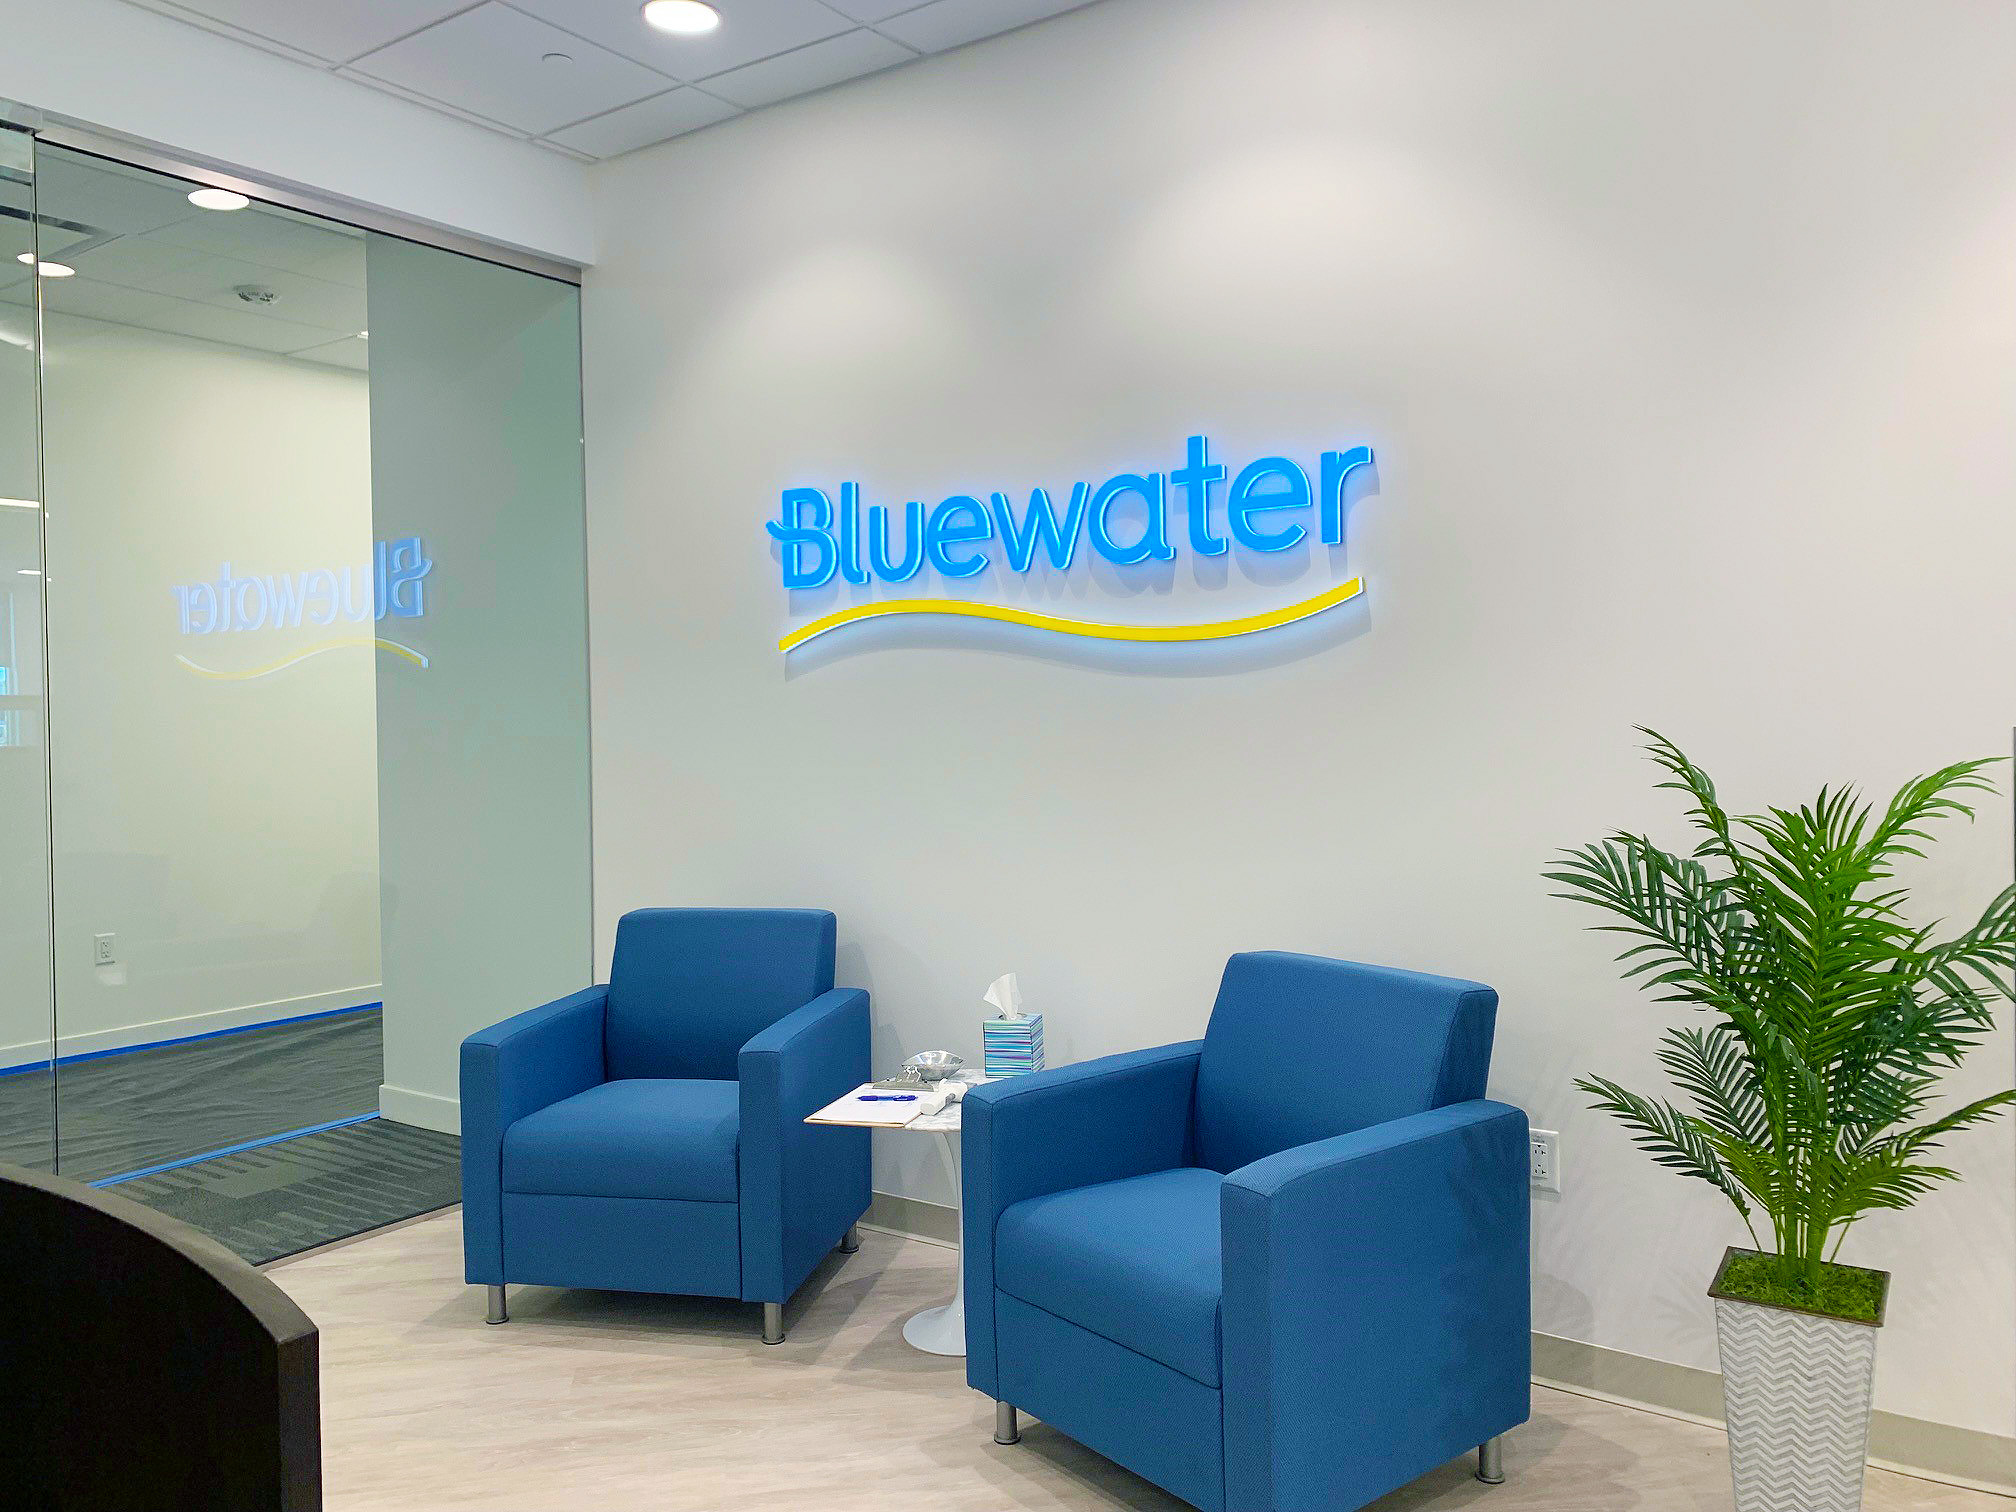 Bluewater Lobby